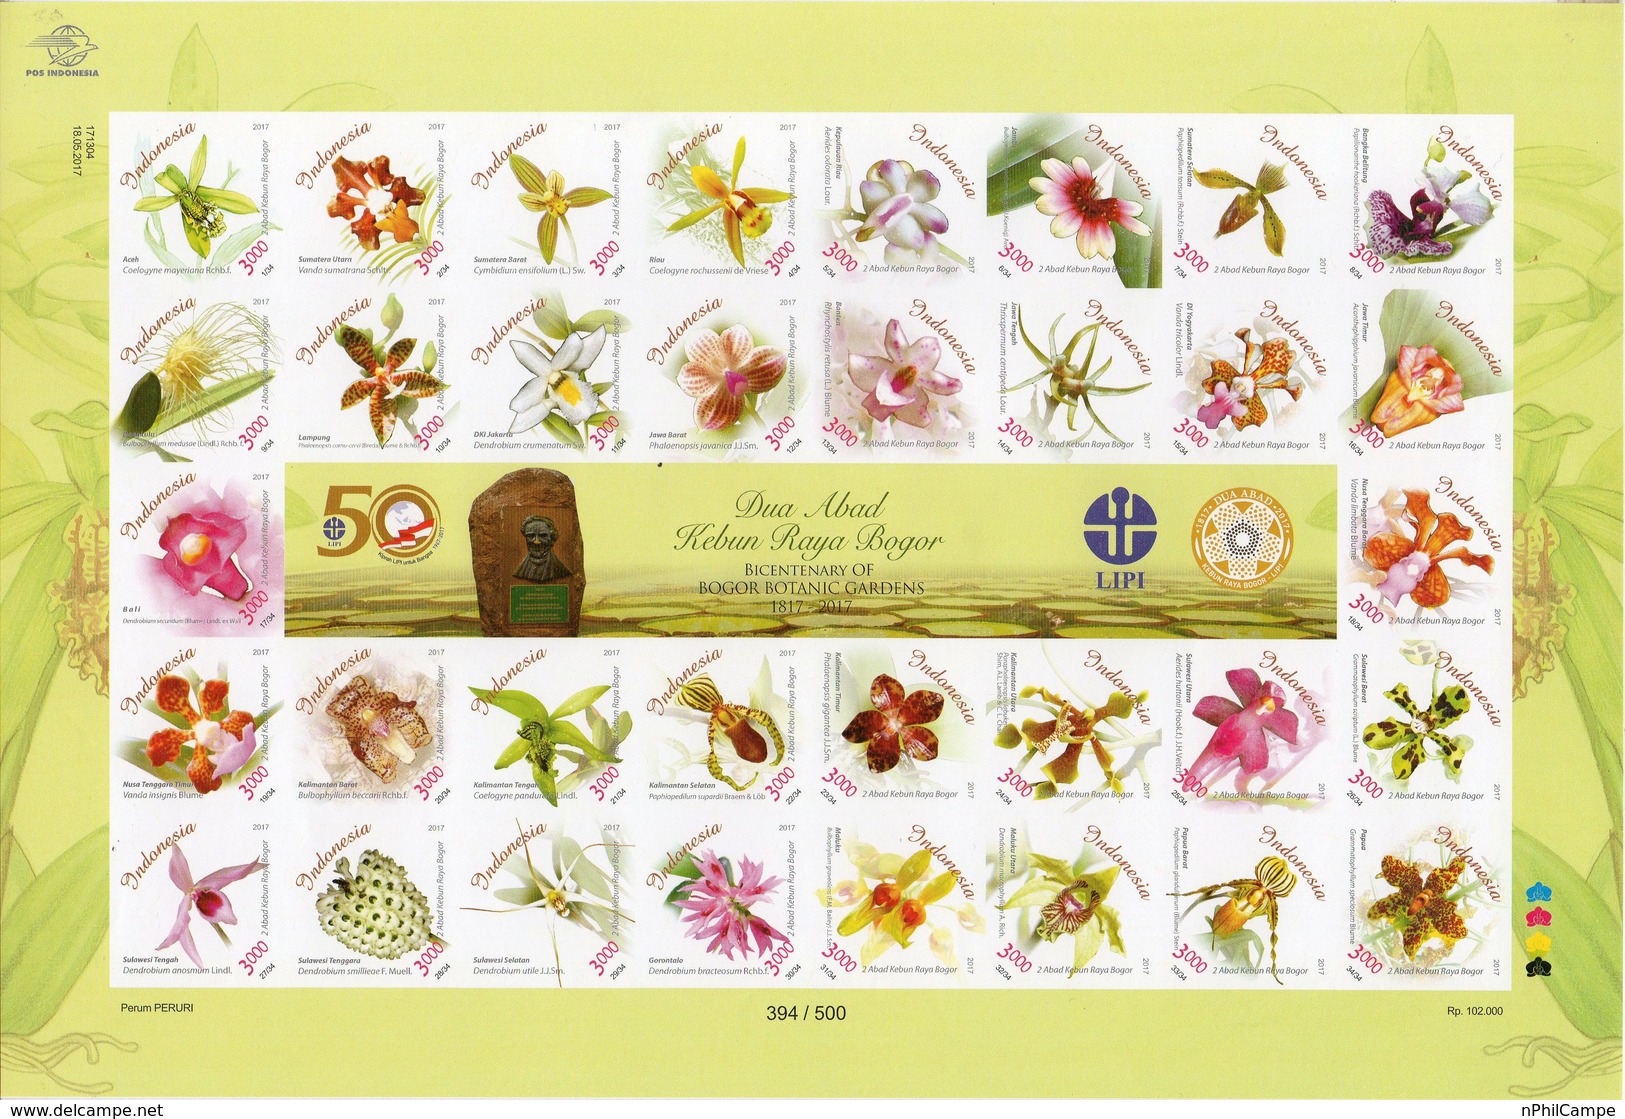 Indonesia Stamps 2017, Full Sheets Bicentenary Of Bogor Botanic Gardens IMPERF MNH - Indonesien